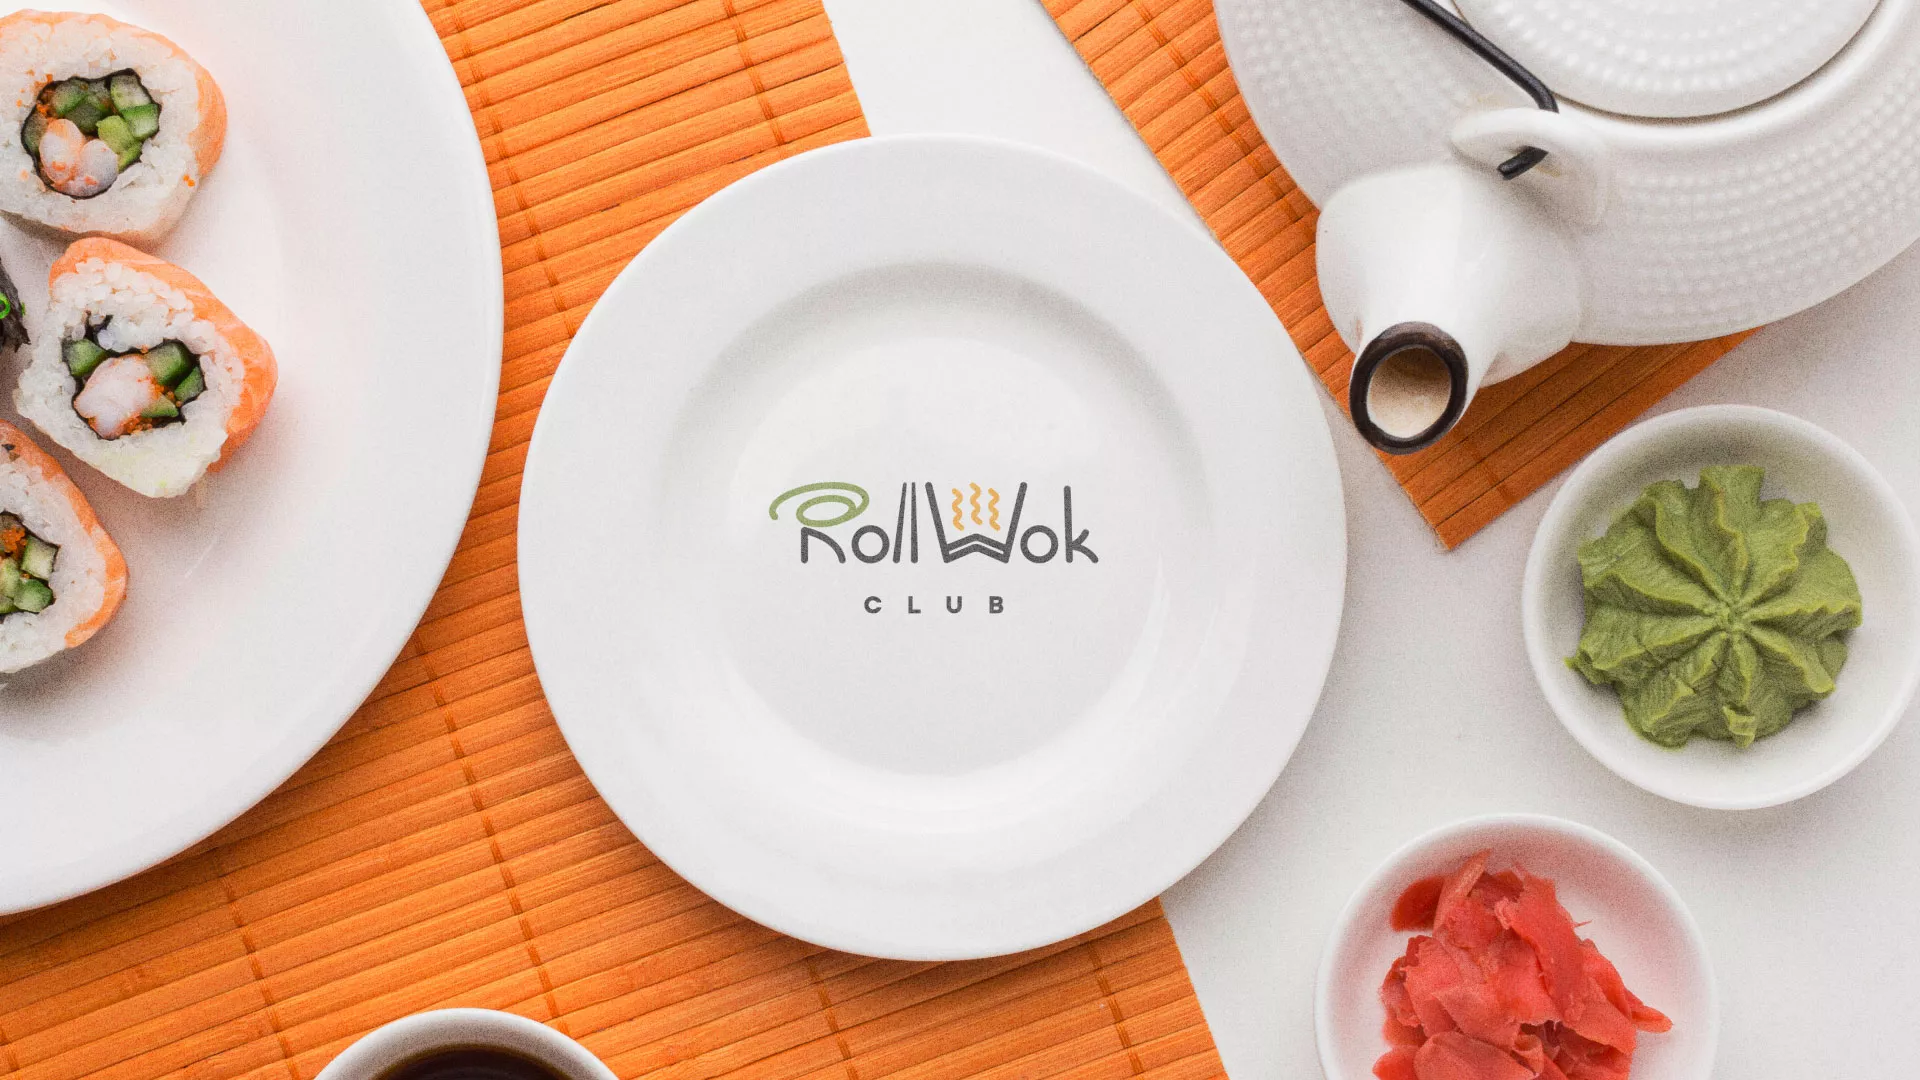 Разработка логотипа и фирменного стиля суши-бара «Roll Wok Club» в Семикаракорске